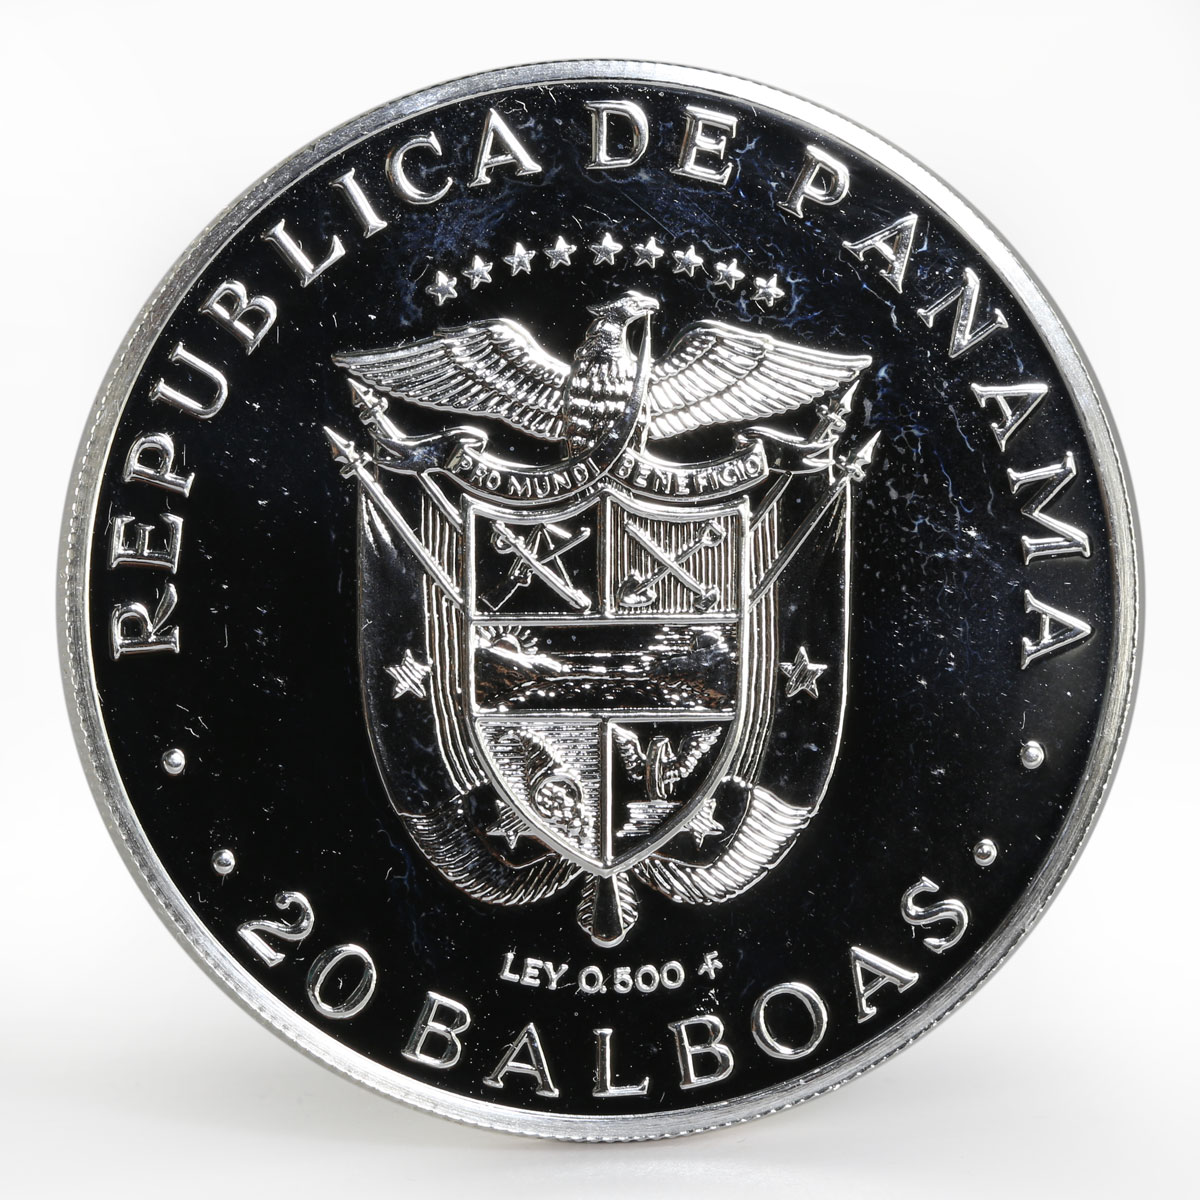 Panama 20 balboas De Simon Bolivar proof silver coin 1983